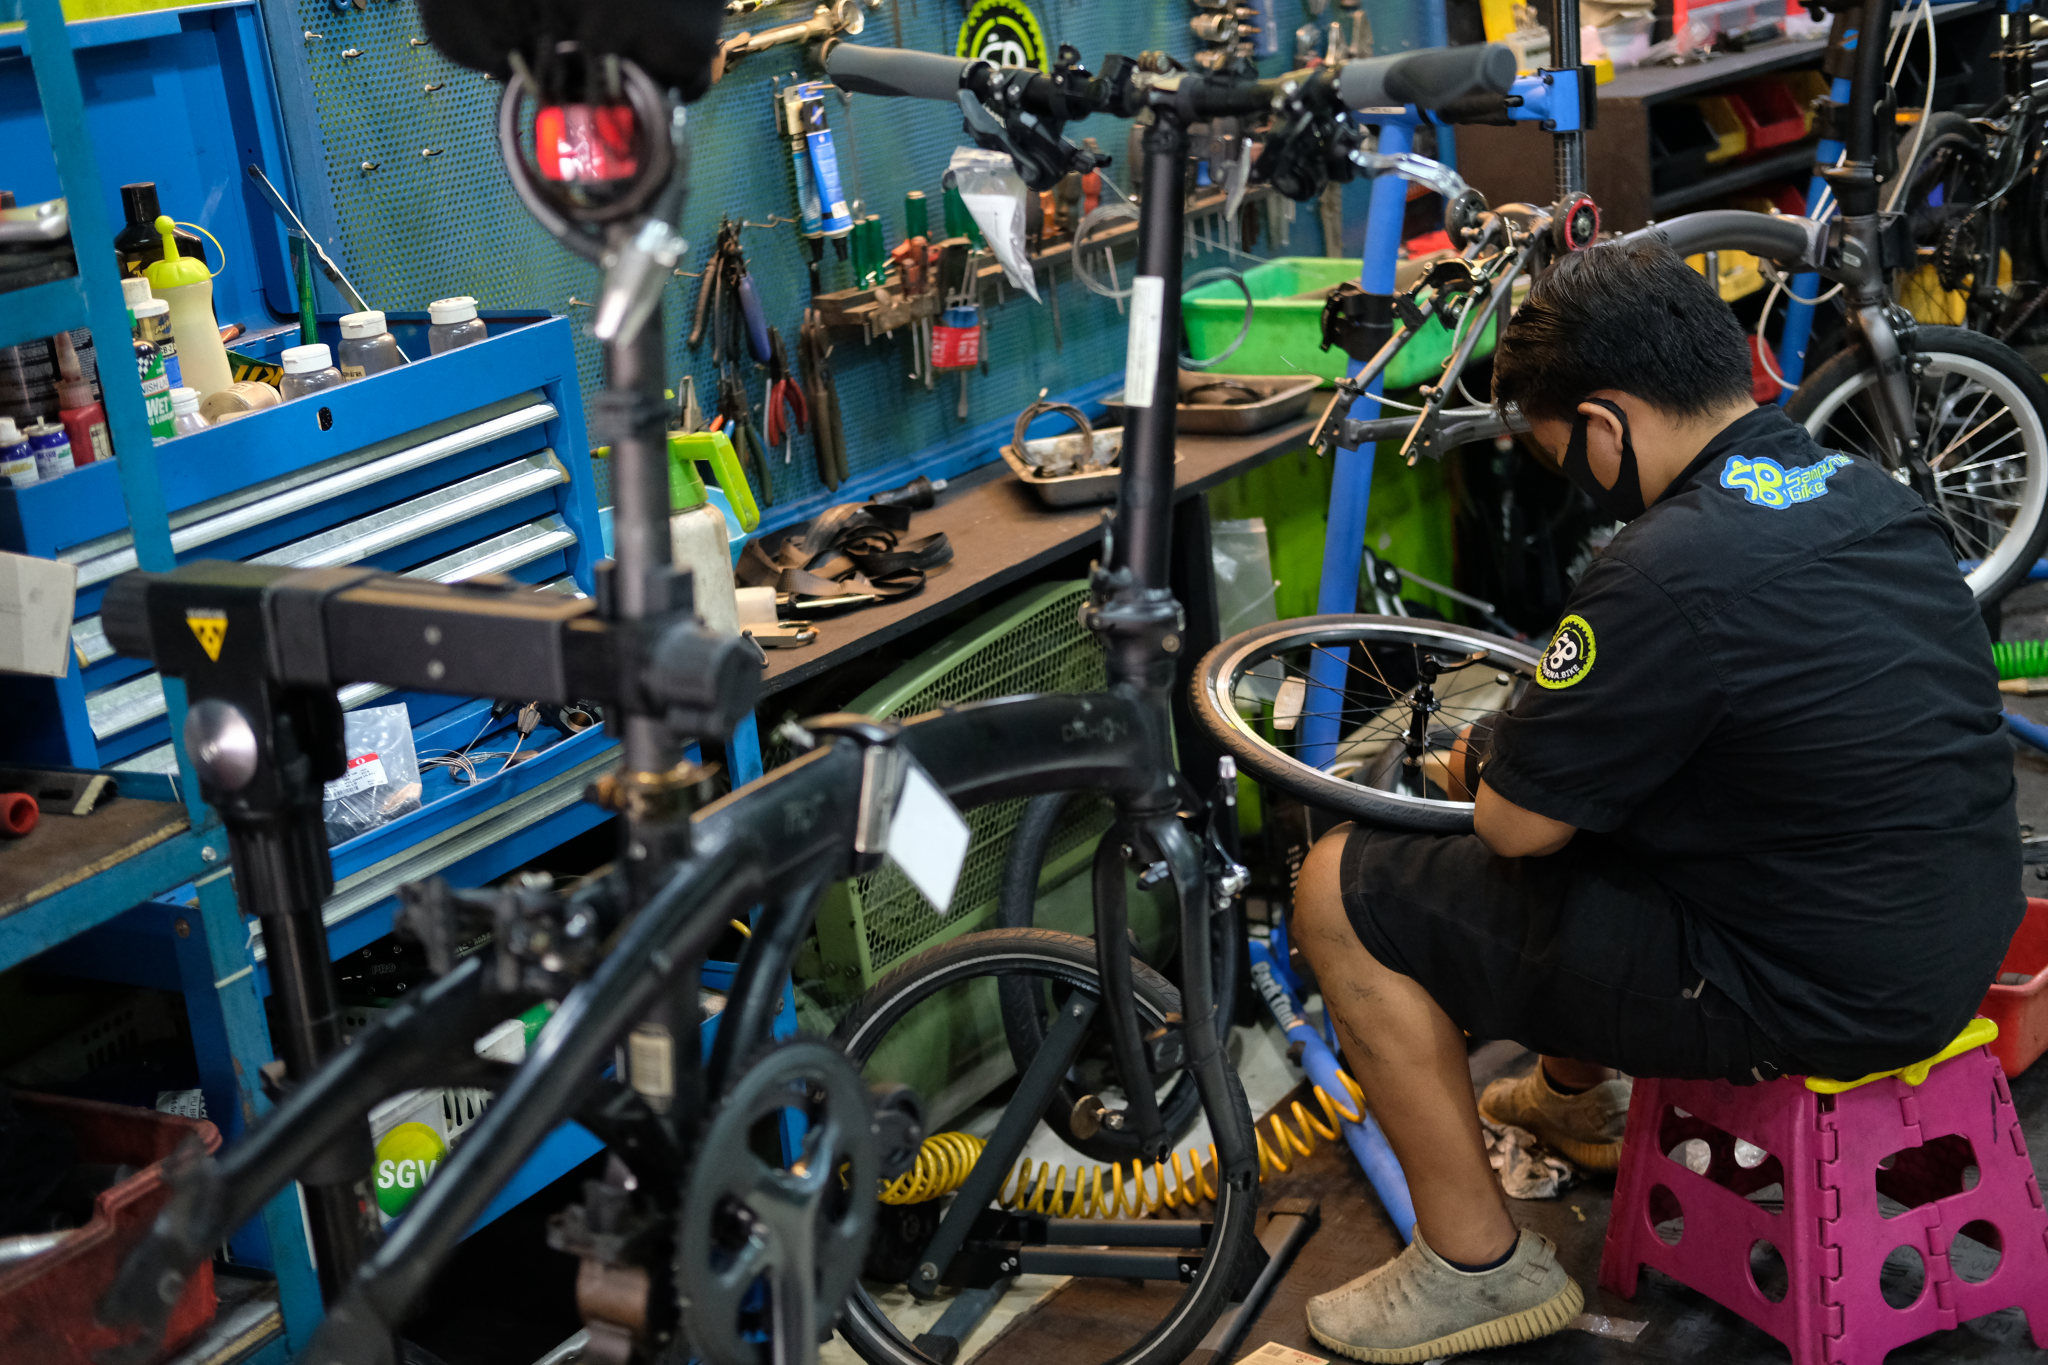 <p>Mekanik mengerjakan reparasi sepeda di Workshop Sampurna Bike, Kalibata, Jakarta, Rabu 1 Juli 2020. Demam sepeda di masyarakat saat pandemi Covid-19 seperti ini menjadi berkah bagi bengkel reparasi sepeda. Setiap harinya bengkel reparasi sepeda dikawasan Kalibata ini kebanjiran warga yang ingin memperbaiki sepeda nya, bahkan banyak yang menitipkan sepedanya karena daftar antrean reparasi yang membludak. Foto: Ismail Pohan/TrenAsia</p>
